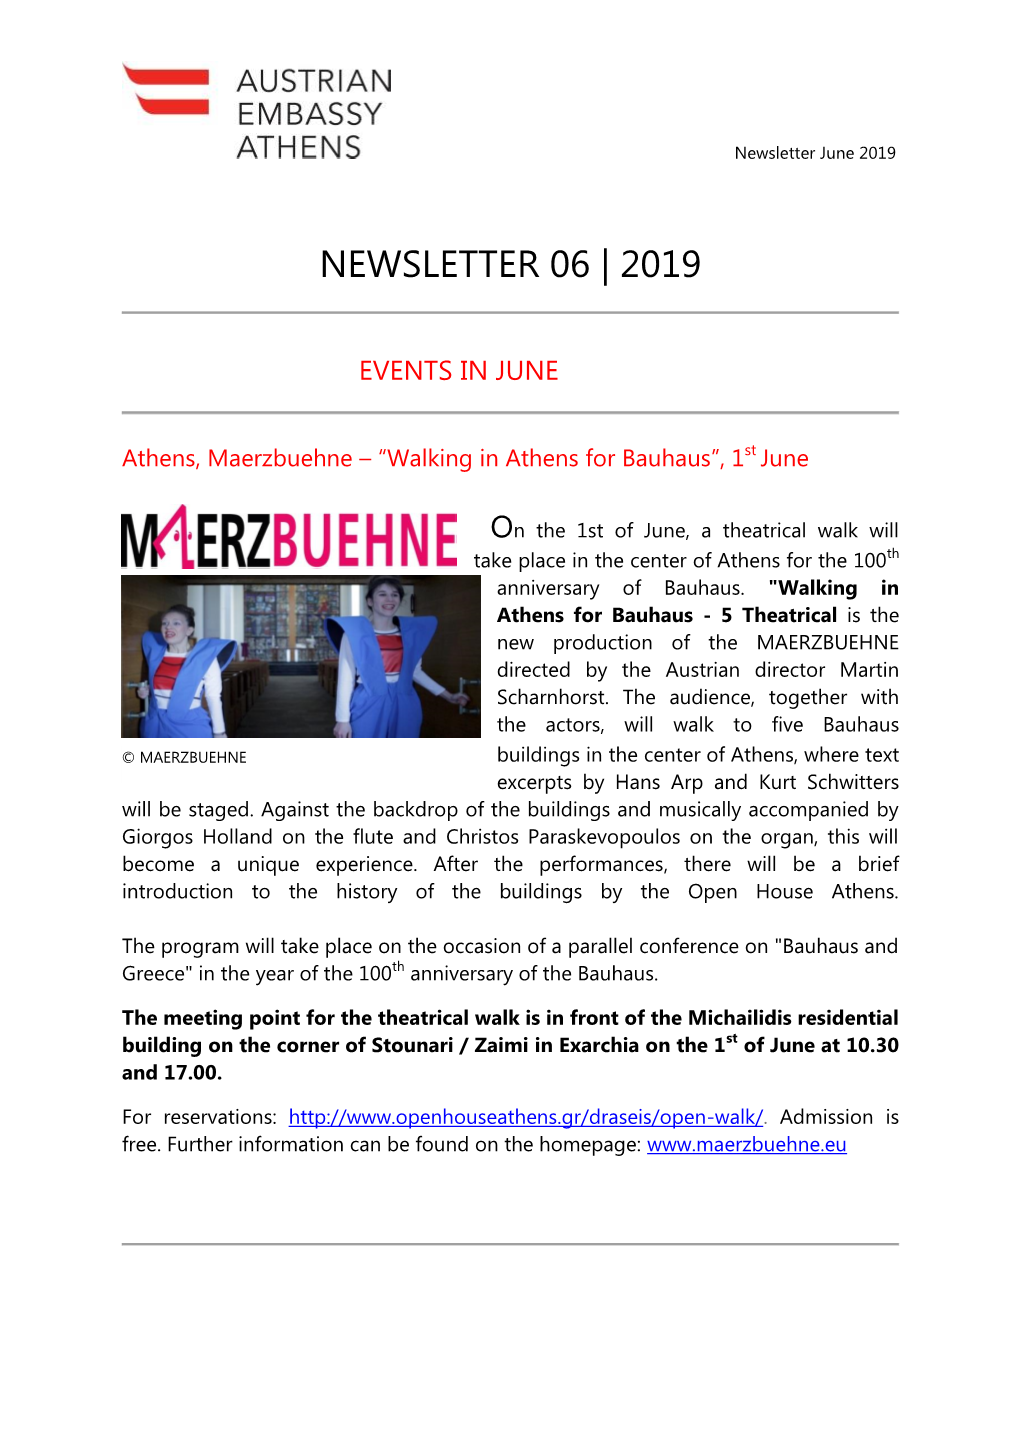 Newsletter 06 | 2019